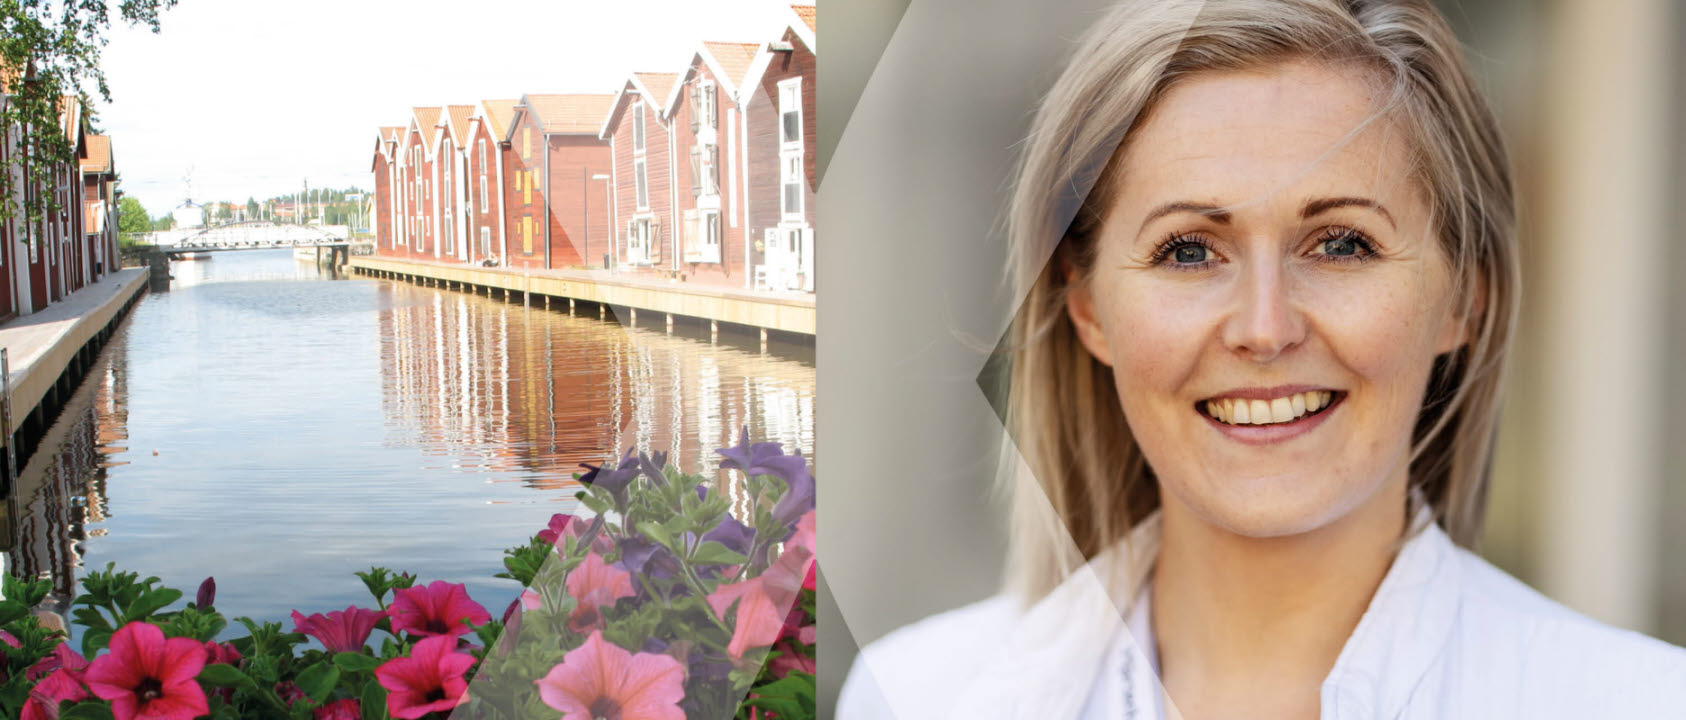 Linnéa Mangseth, specialistsjuksköterska och vårdenhetschef i Hudiksvall